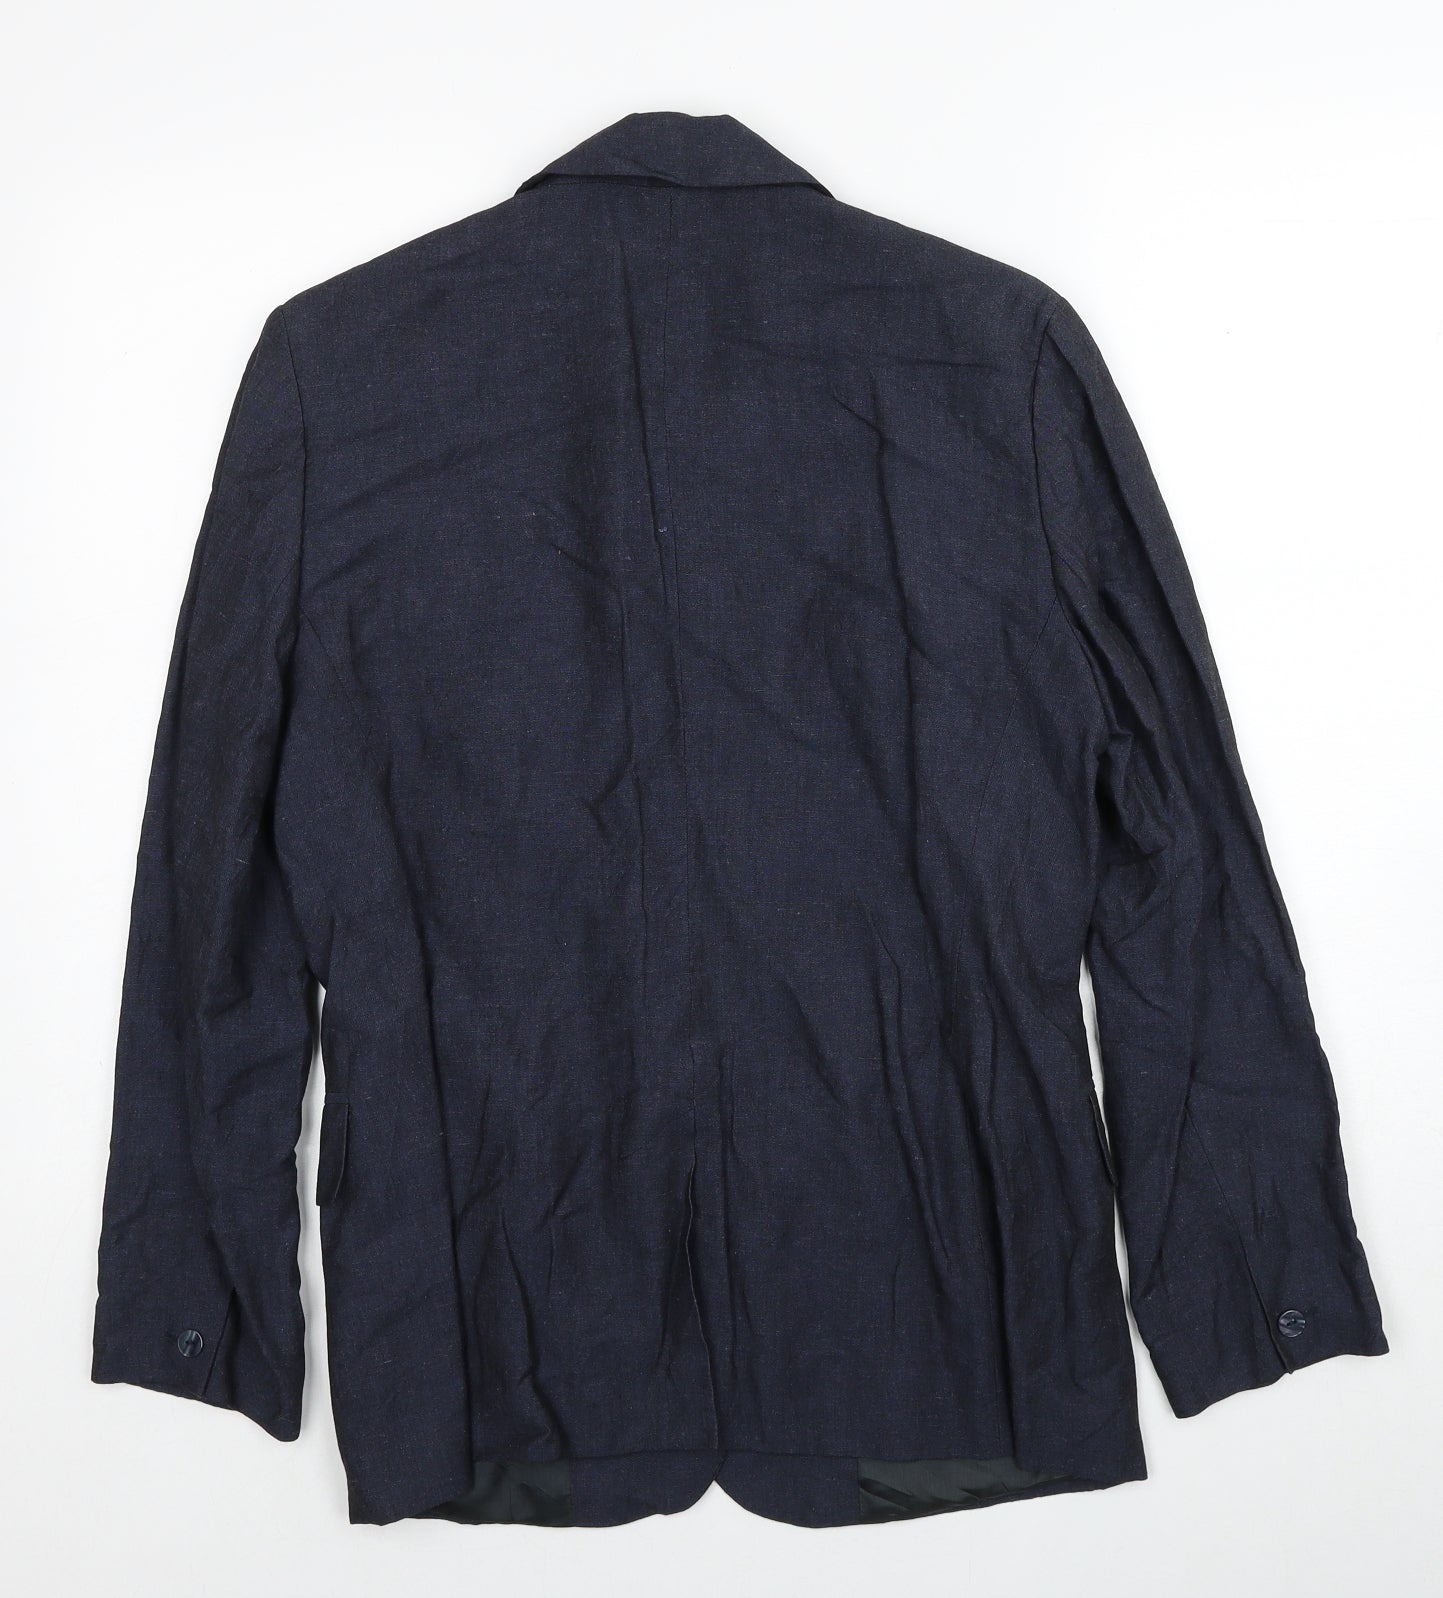 Laura Ashley Womens Blue Viscose Jacket Suit Jacket Size 14